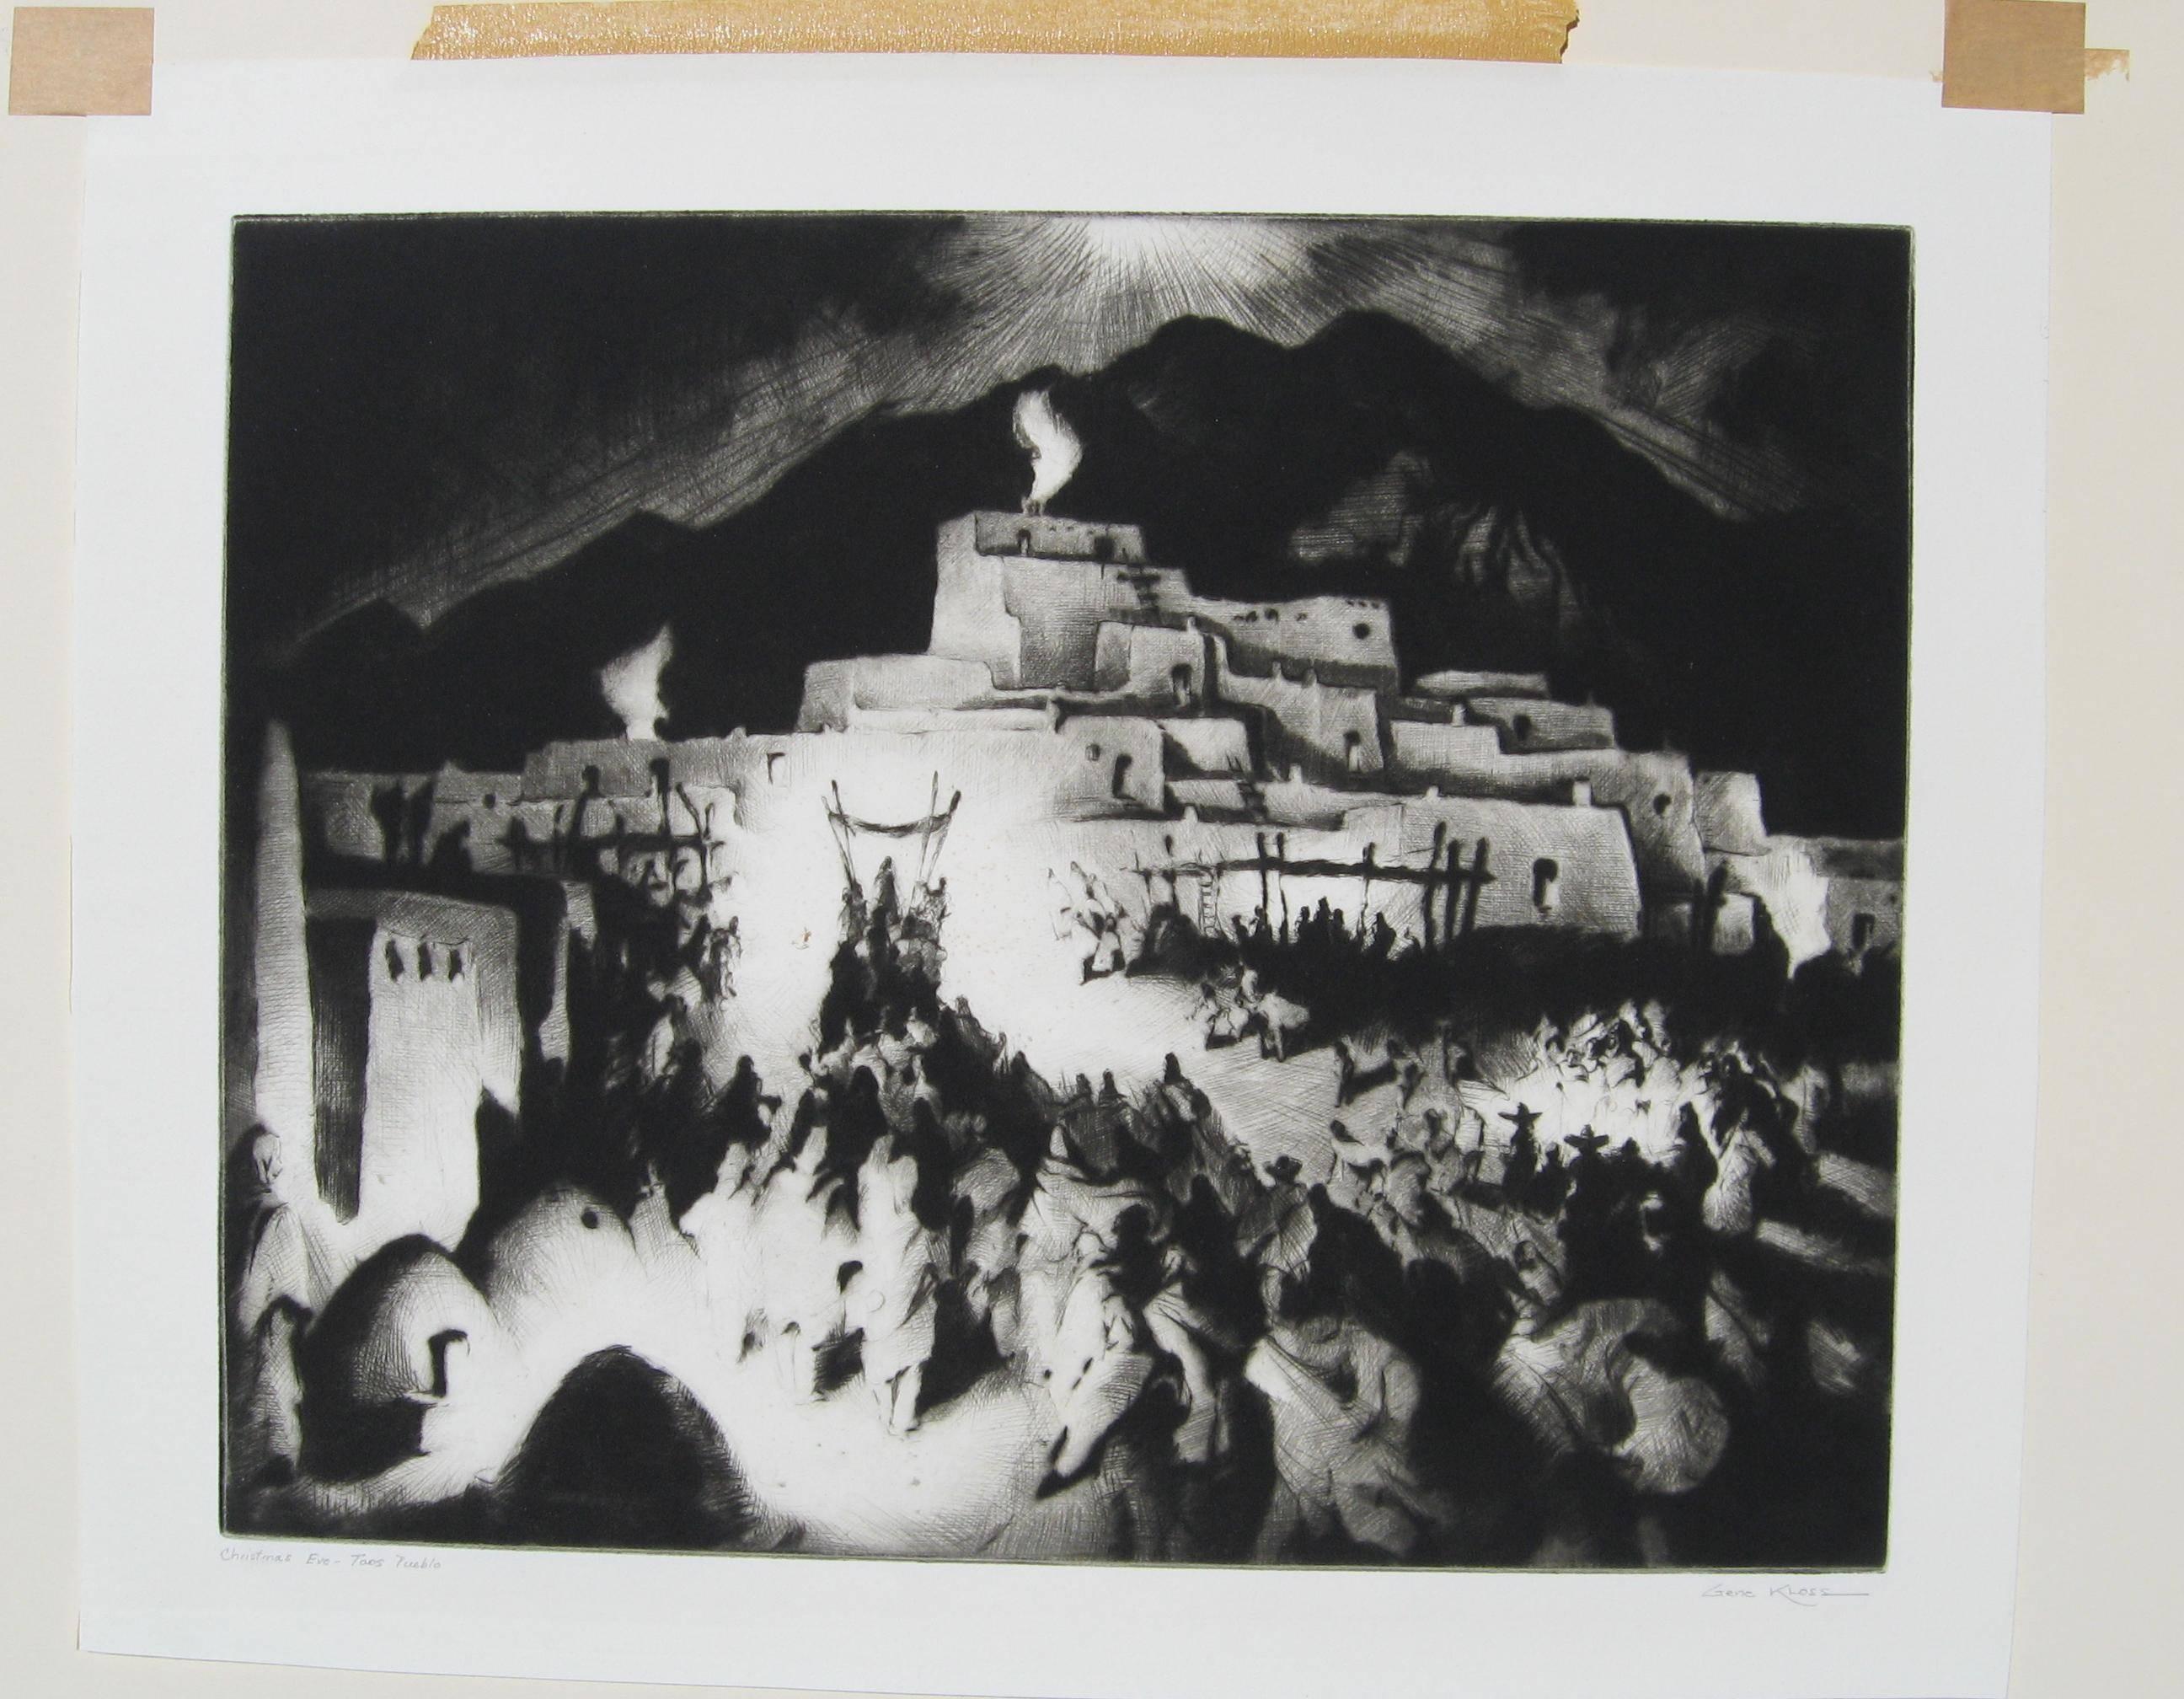 Kaltnadelradierung des berühmten Künstlers Gene Kloss (1903-1996) aus Taos.
Auflage von 75 Stück. Titel: Heiligabend - Taos Pueblo.
Das Bild misst: 12